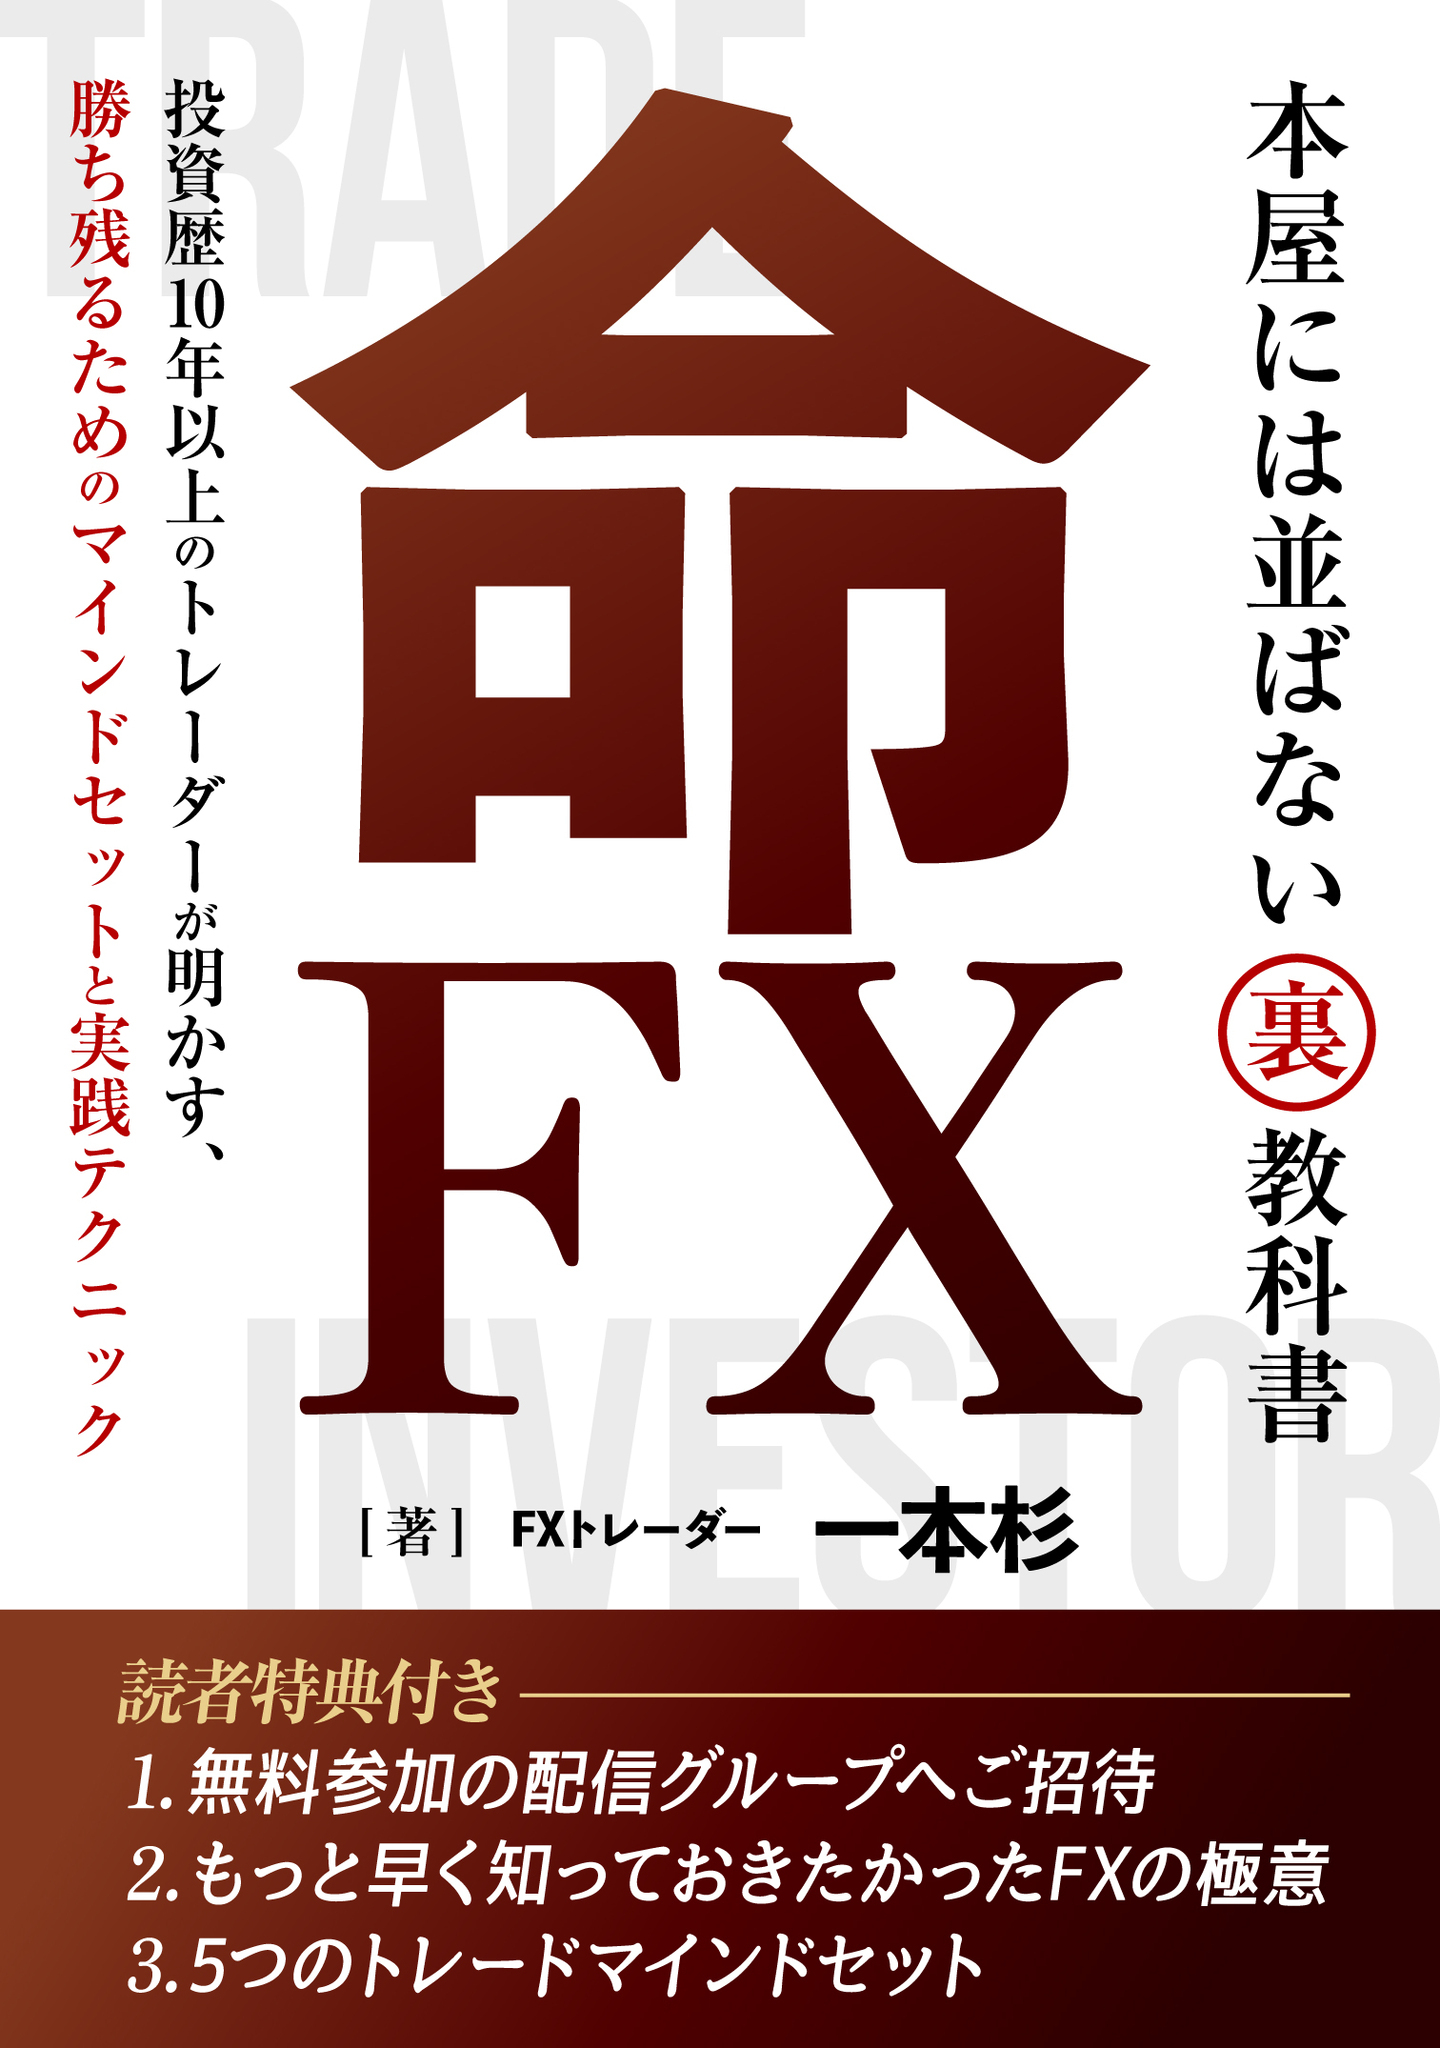 現役FXトレーダー 一本杉の電子書籍『命FX』 Amazon Kindleランキング 